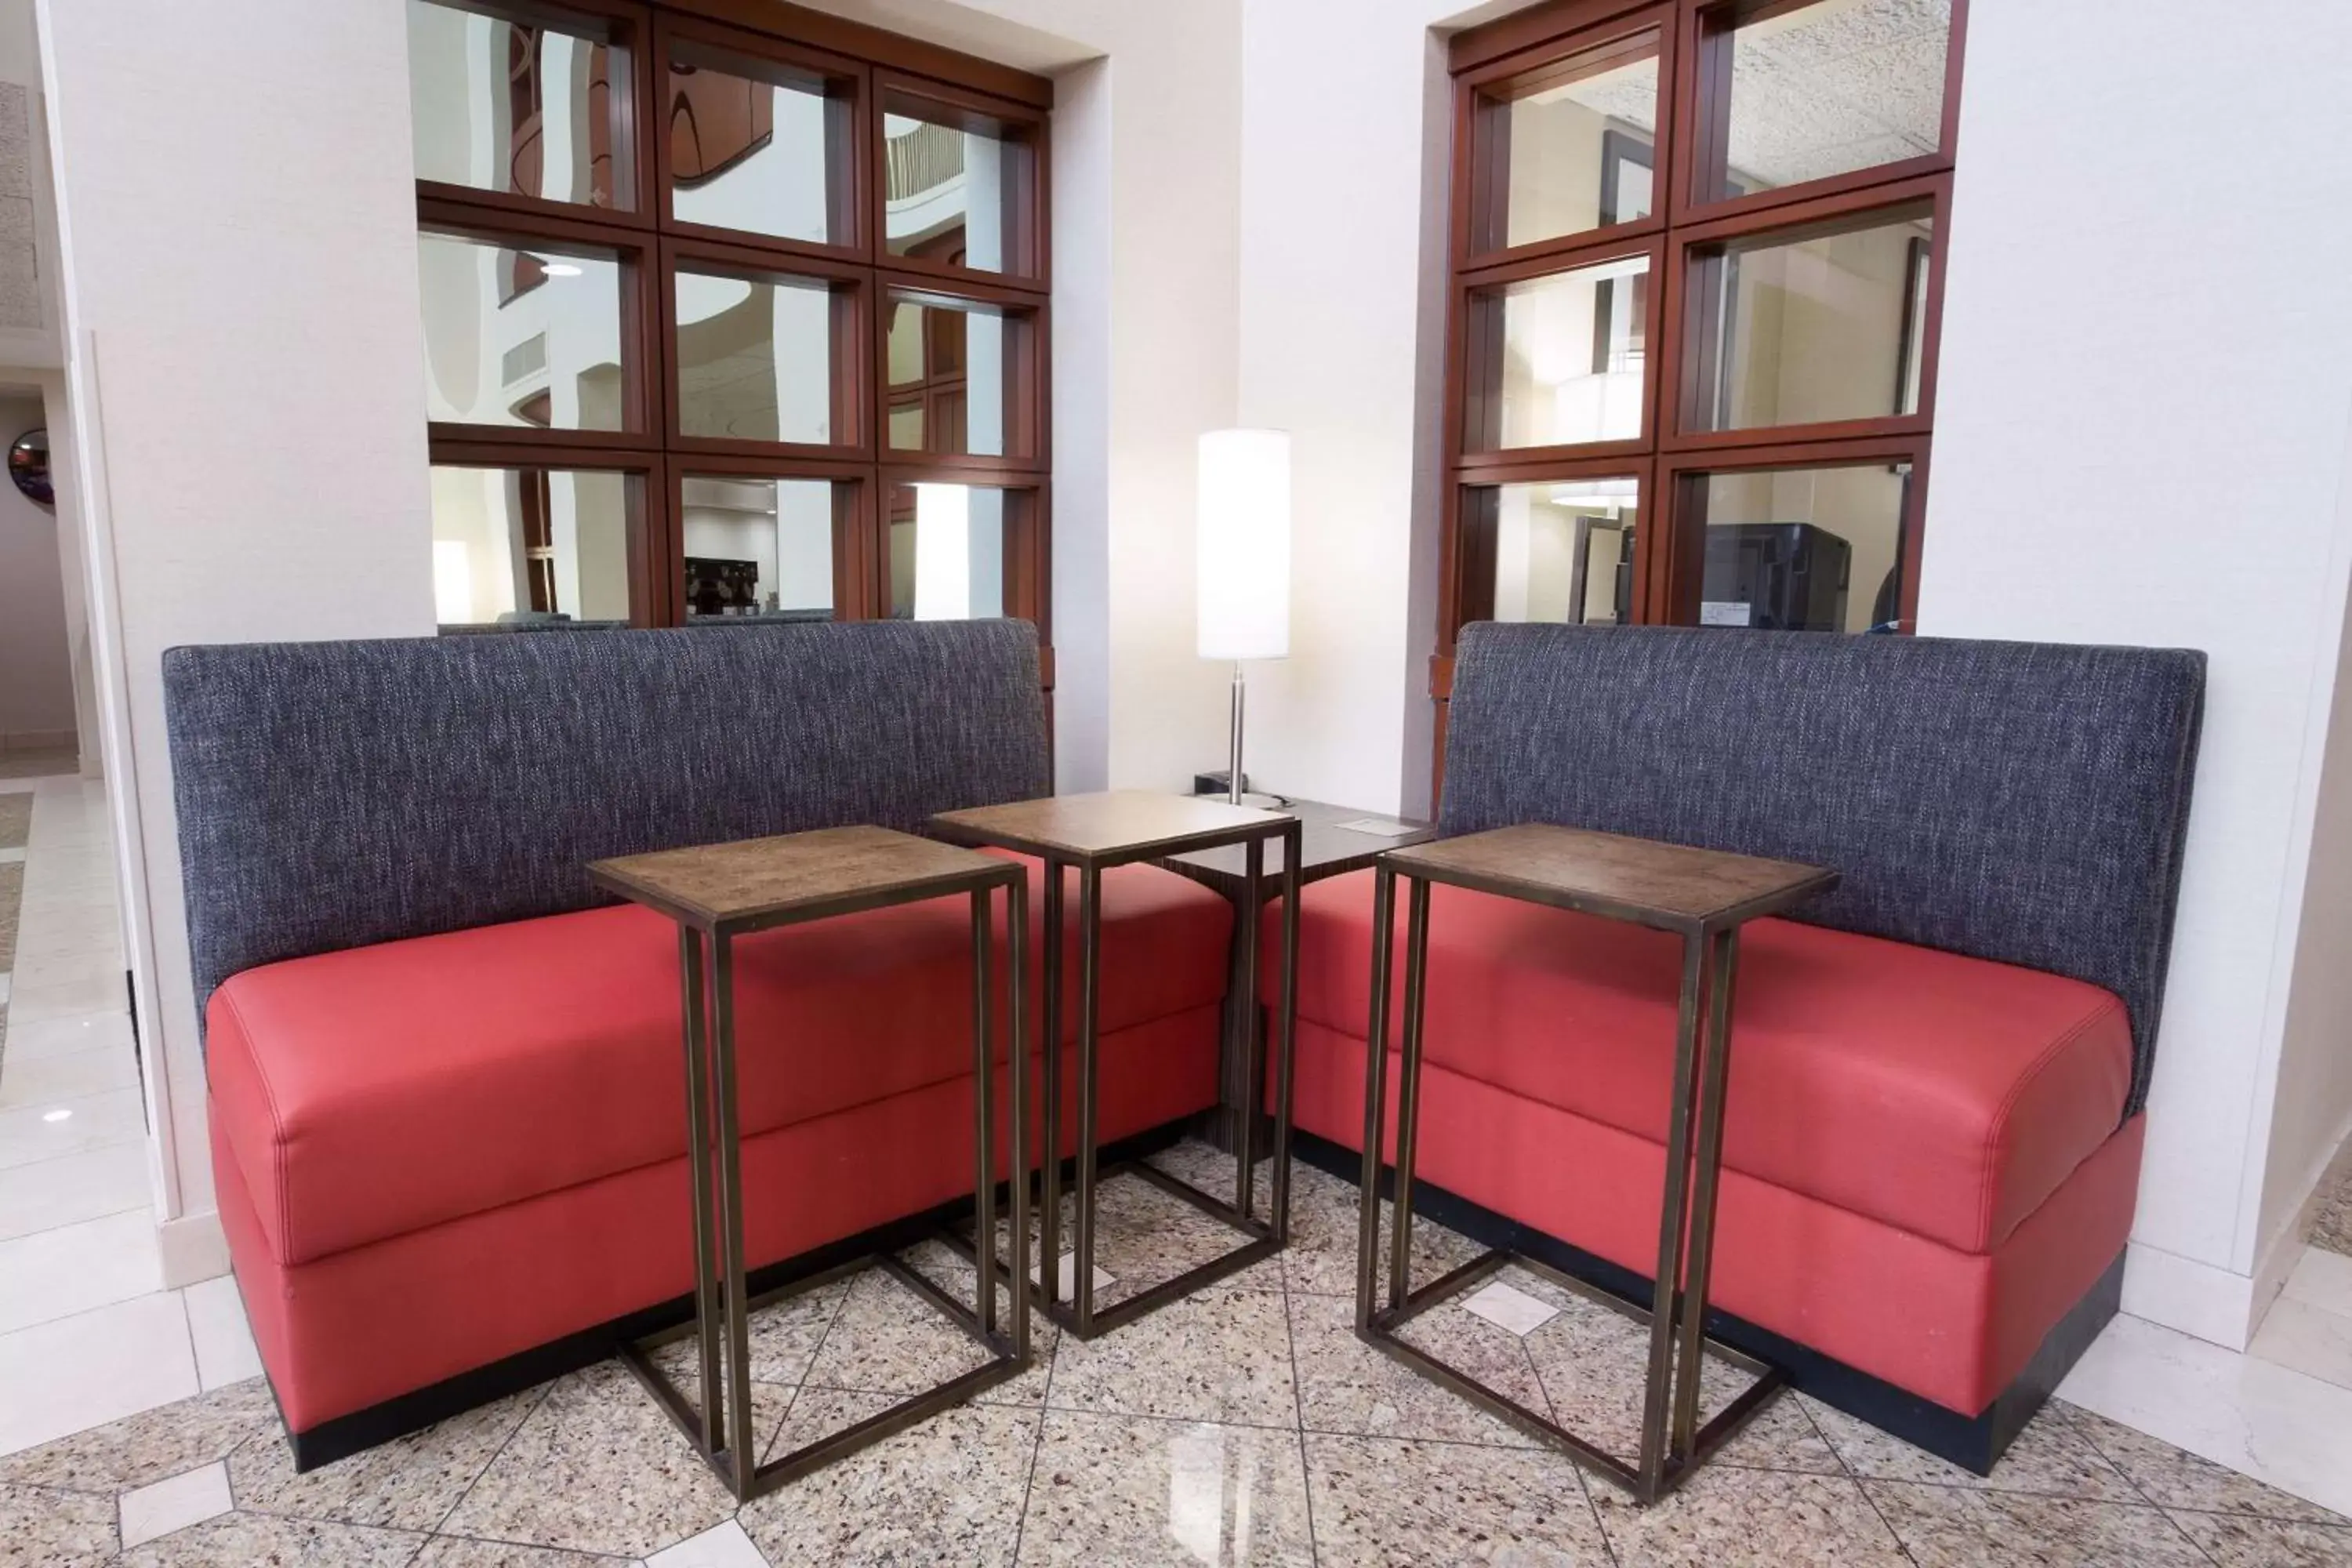 Lobby or reception, Seating Area in Drury Inn & Suites Joplin